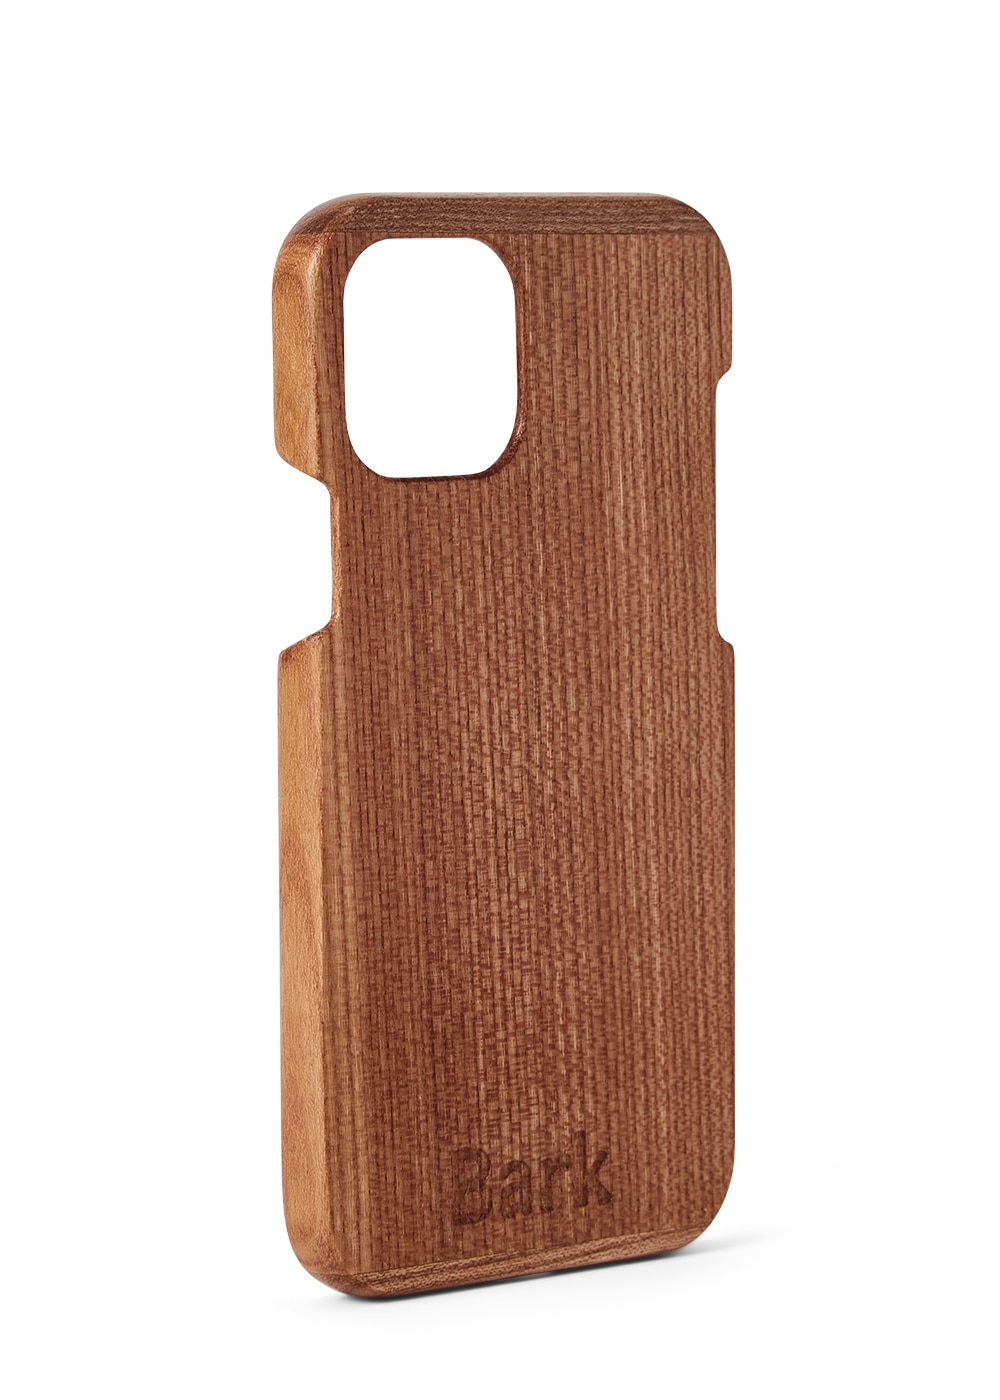 iPhone 12 Pro coque en bois de feuillus suédois - Alm